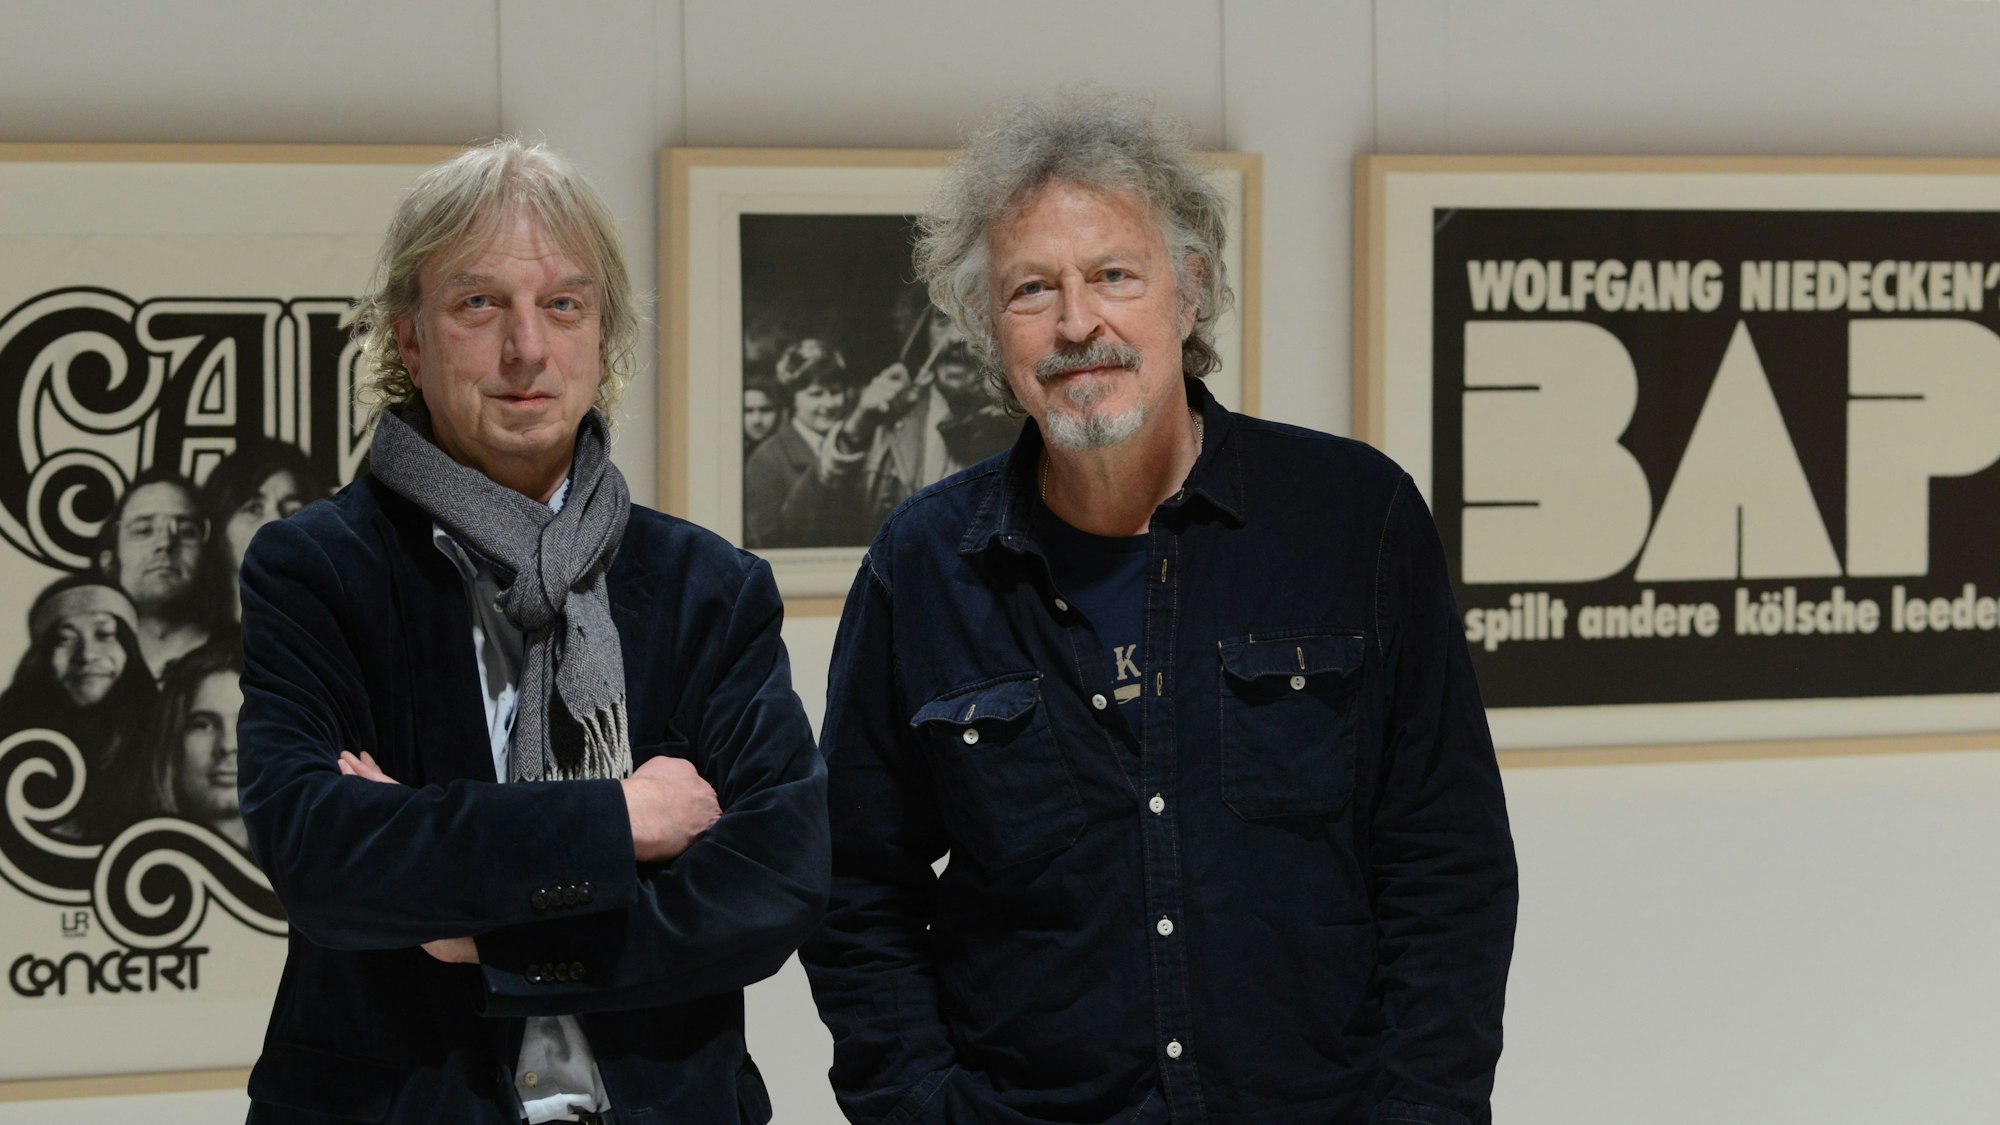 Frank Steffan und Wolfgang Niedecken trafen sich im Historischen Archiv zum  Gespräch über Kölschrock.